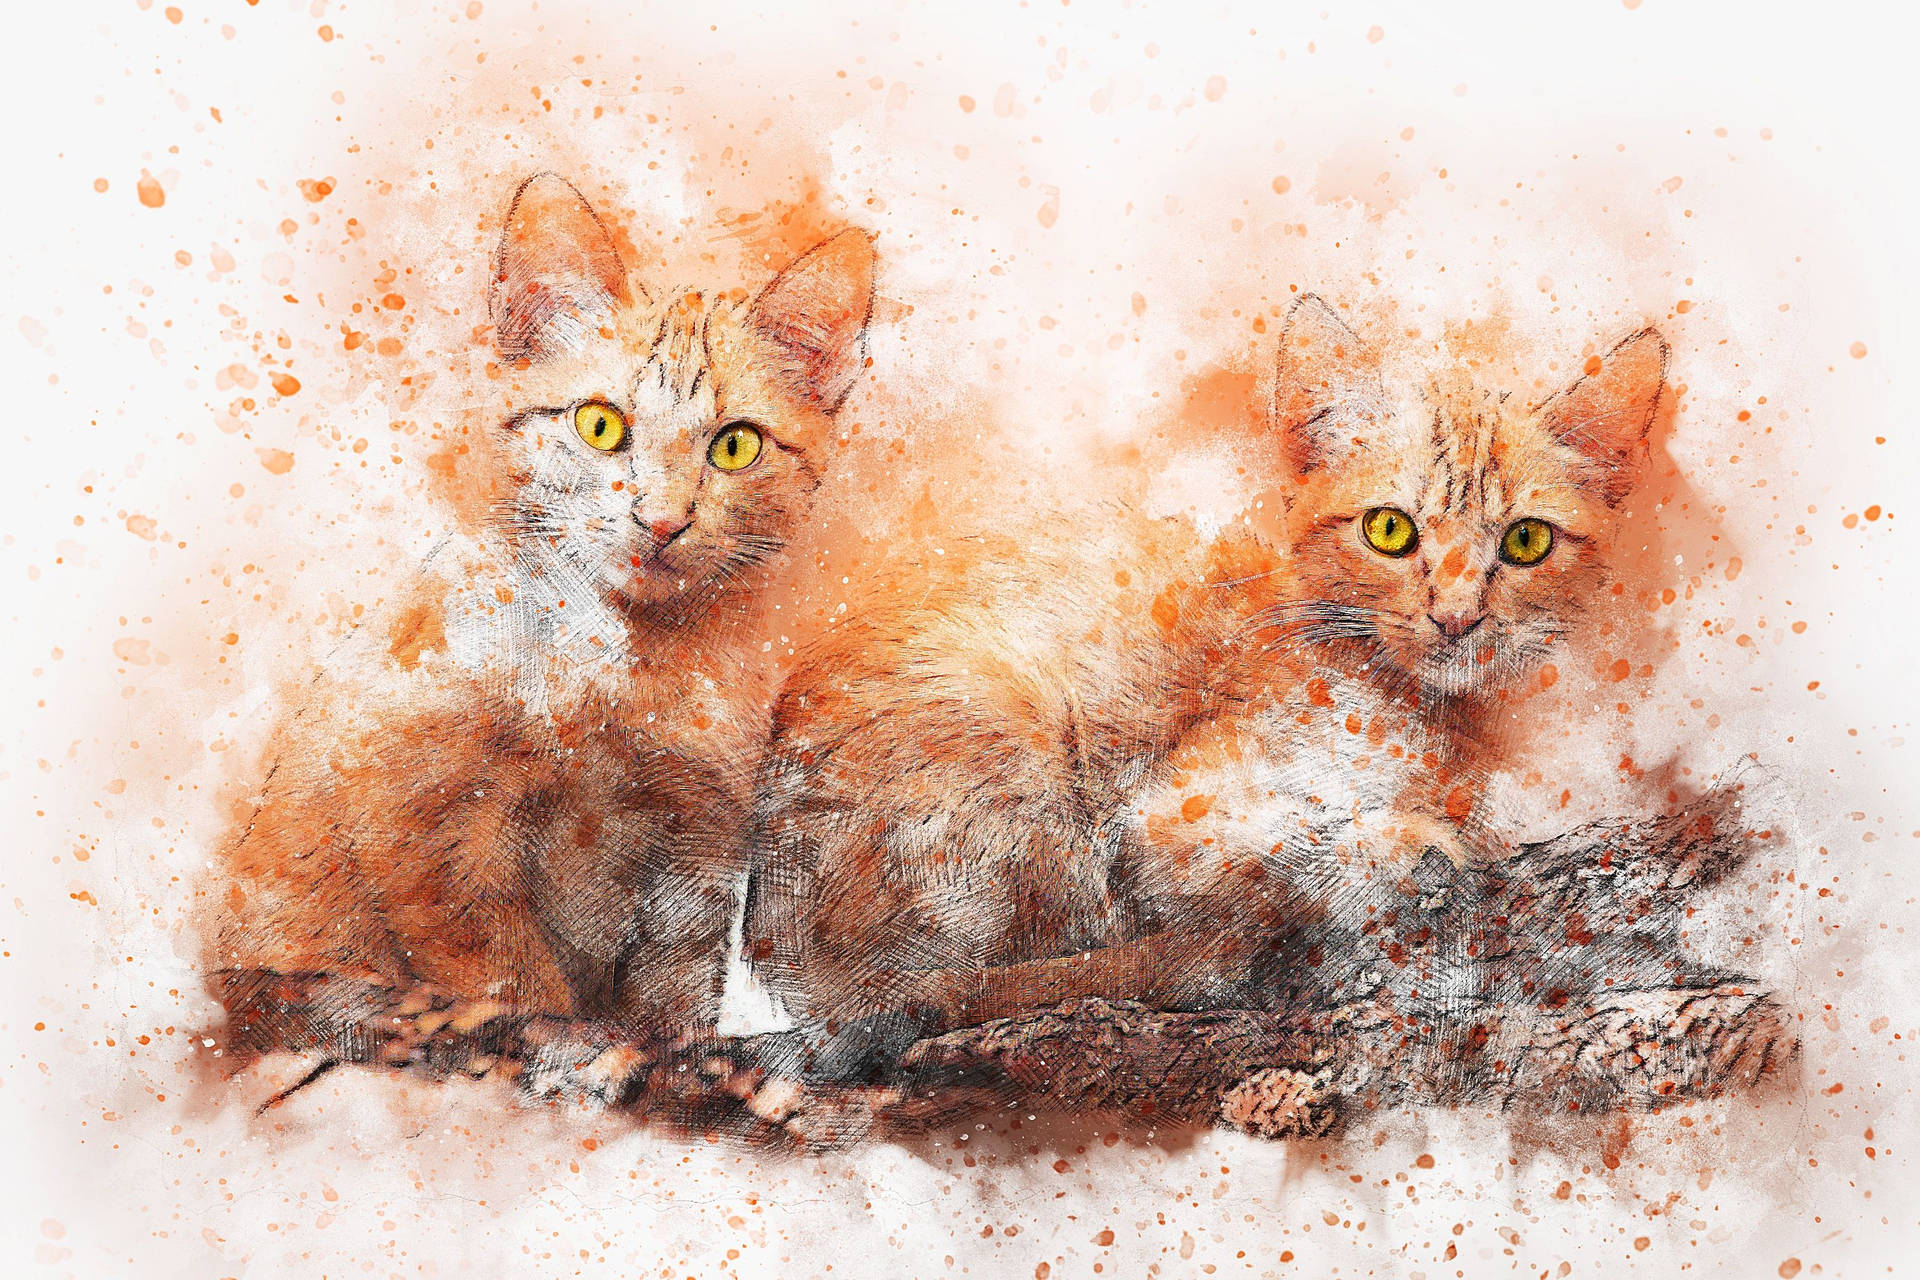 Cat Art Wallpaper Images